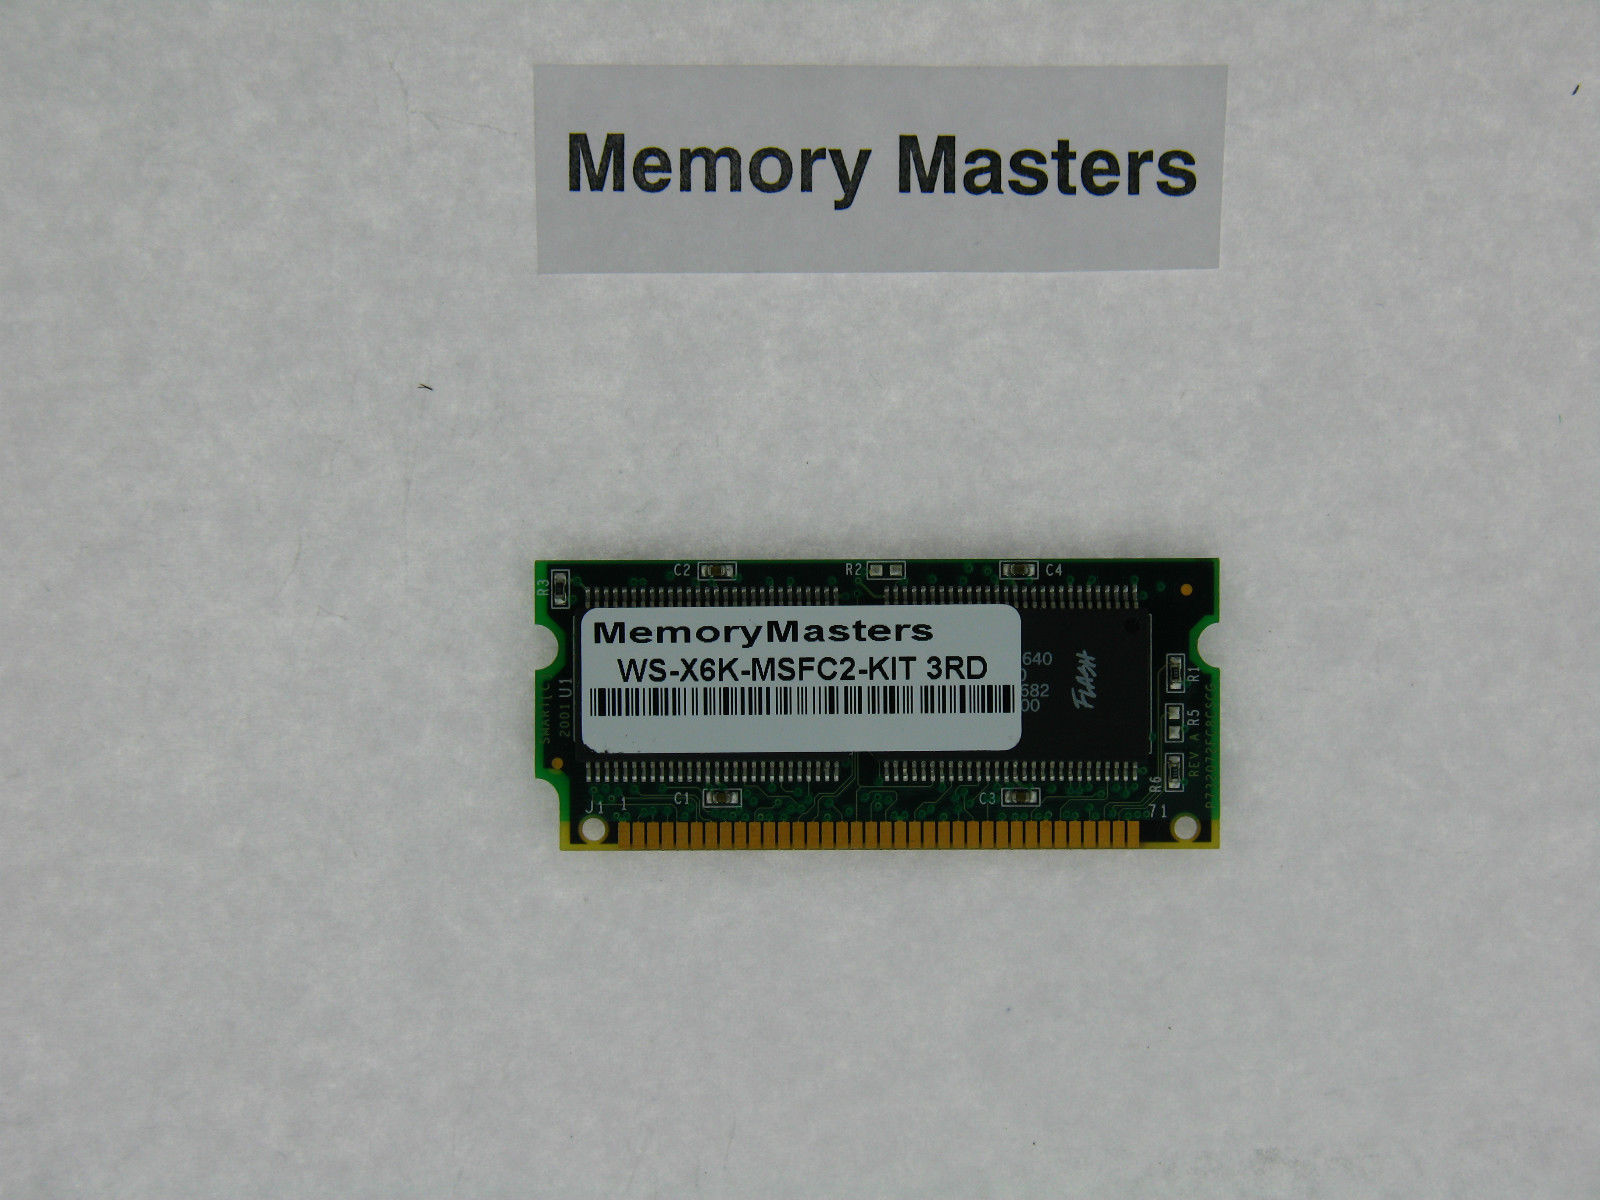 Primary image for WS-X6K-MSFC2-KIT 32MB  memory for Cisco MSFC2